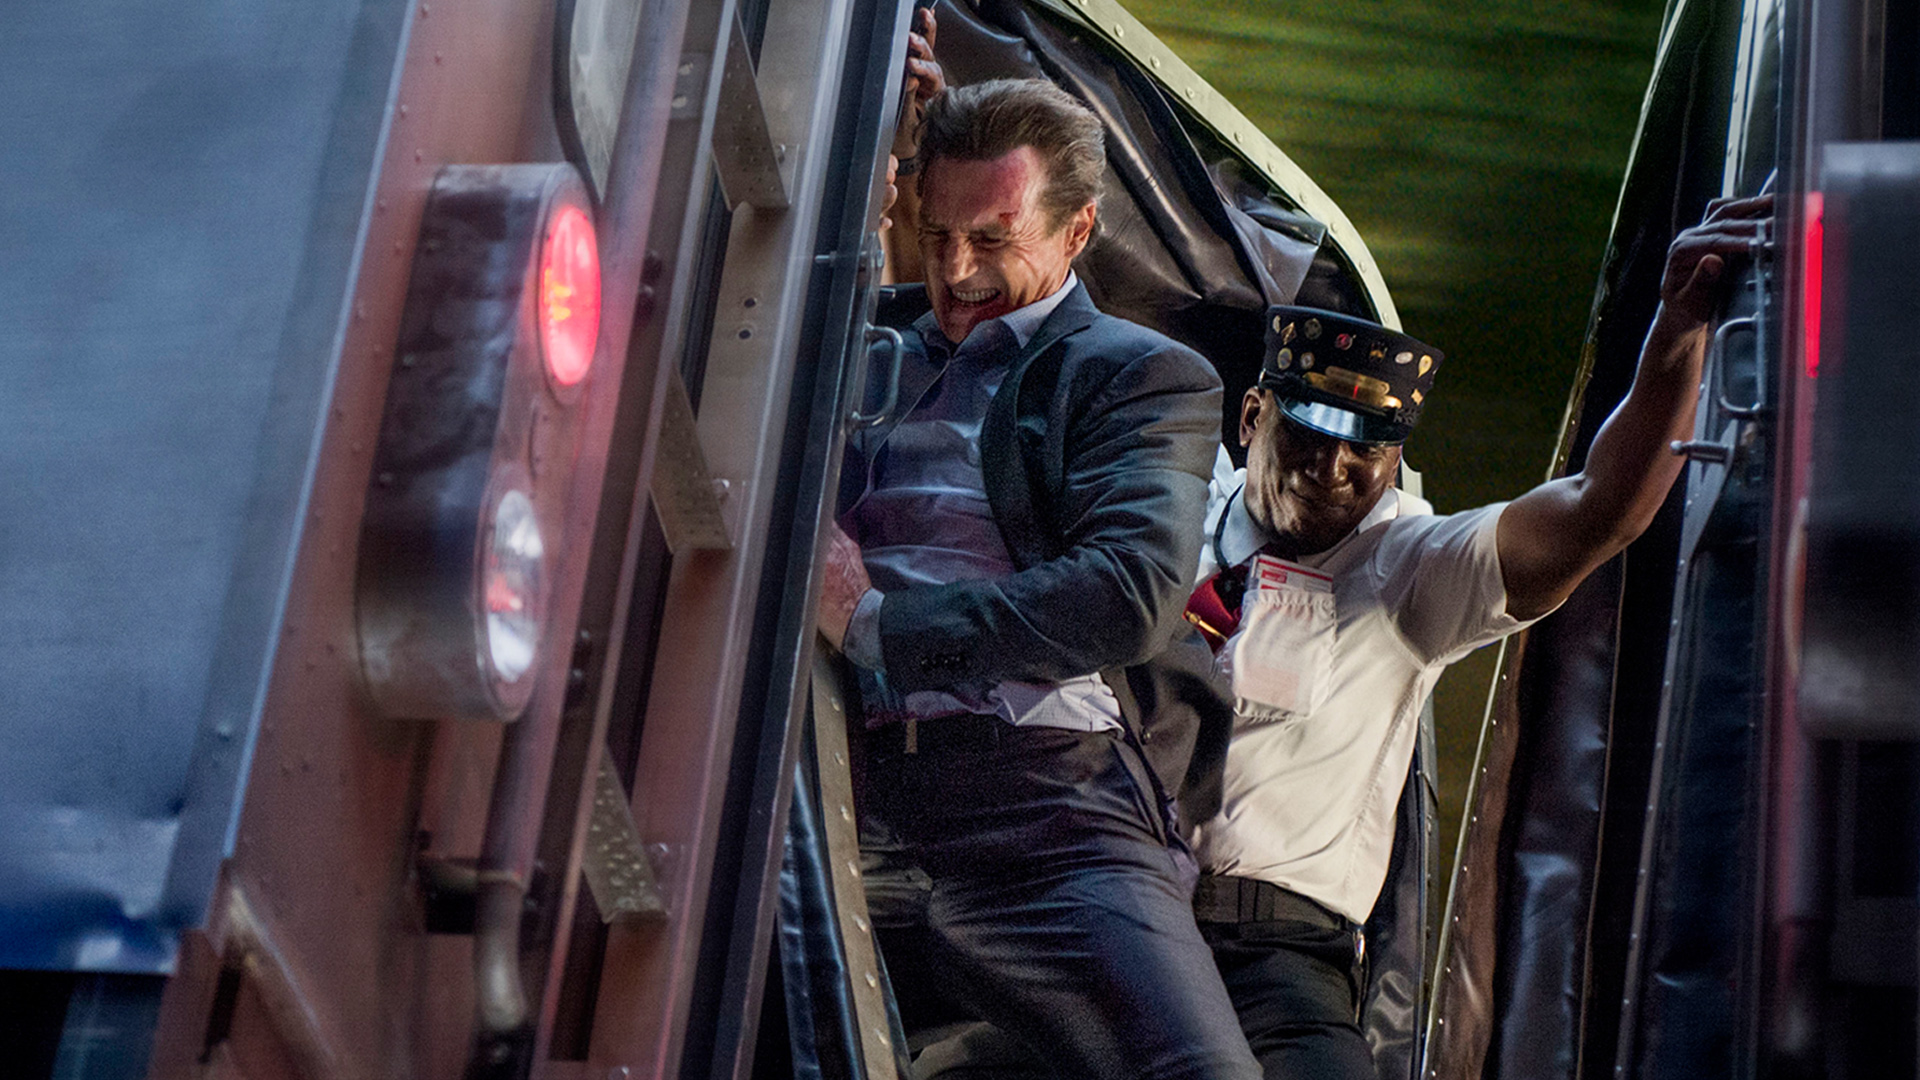 The Passenger : Le film marque les retrouvailles entre le cinéma d'action et Liam Neeson, qui "sort de sa retraite".